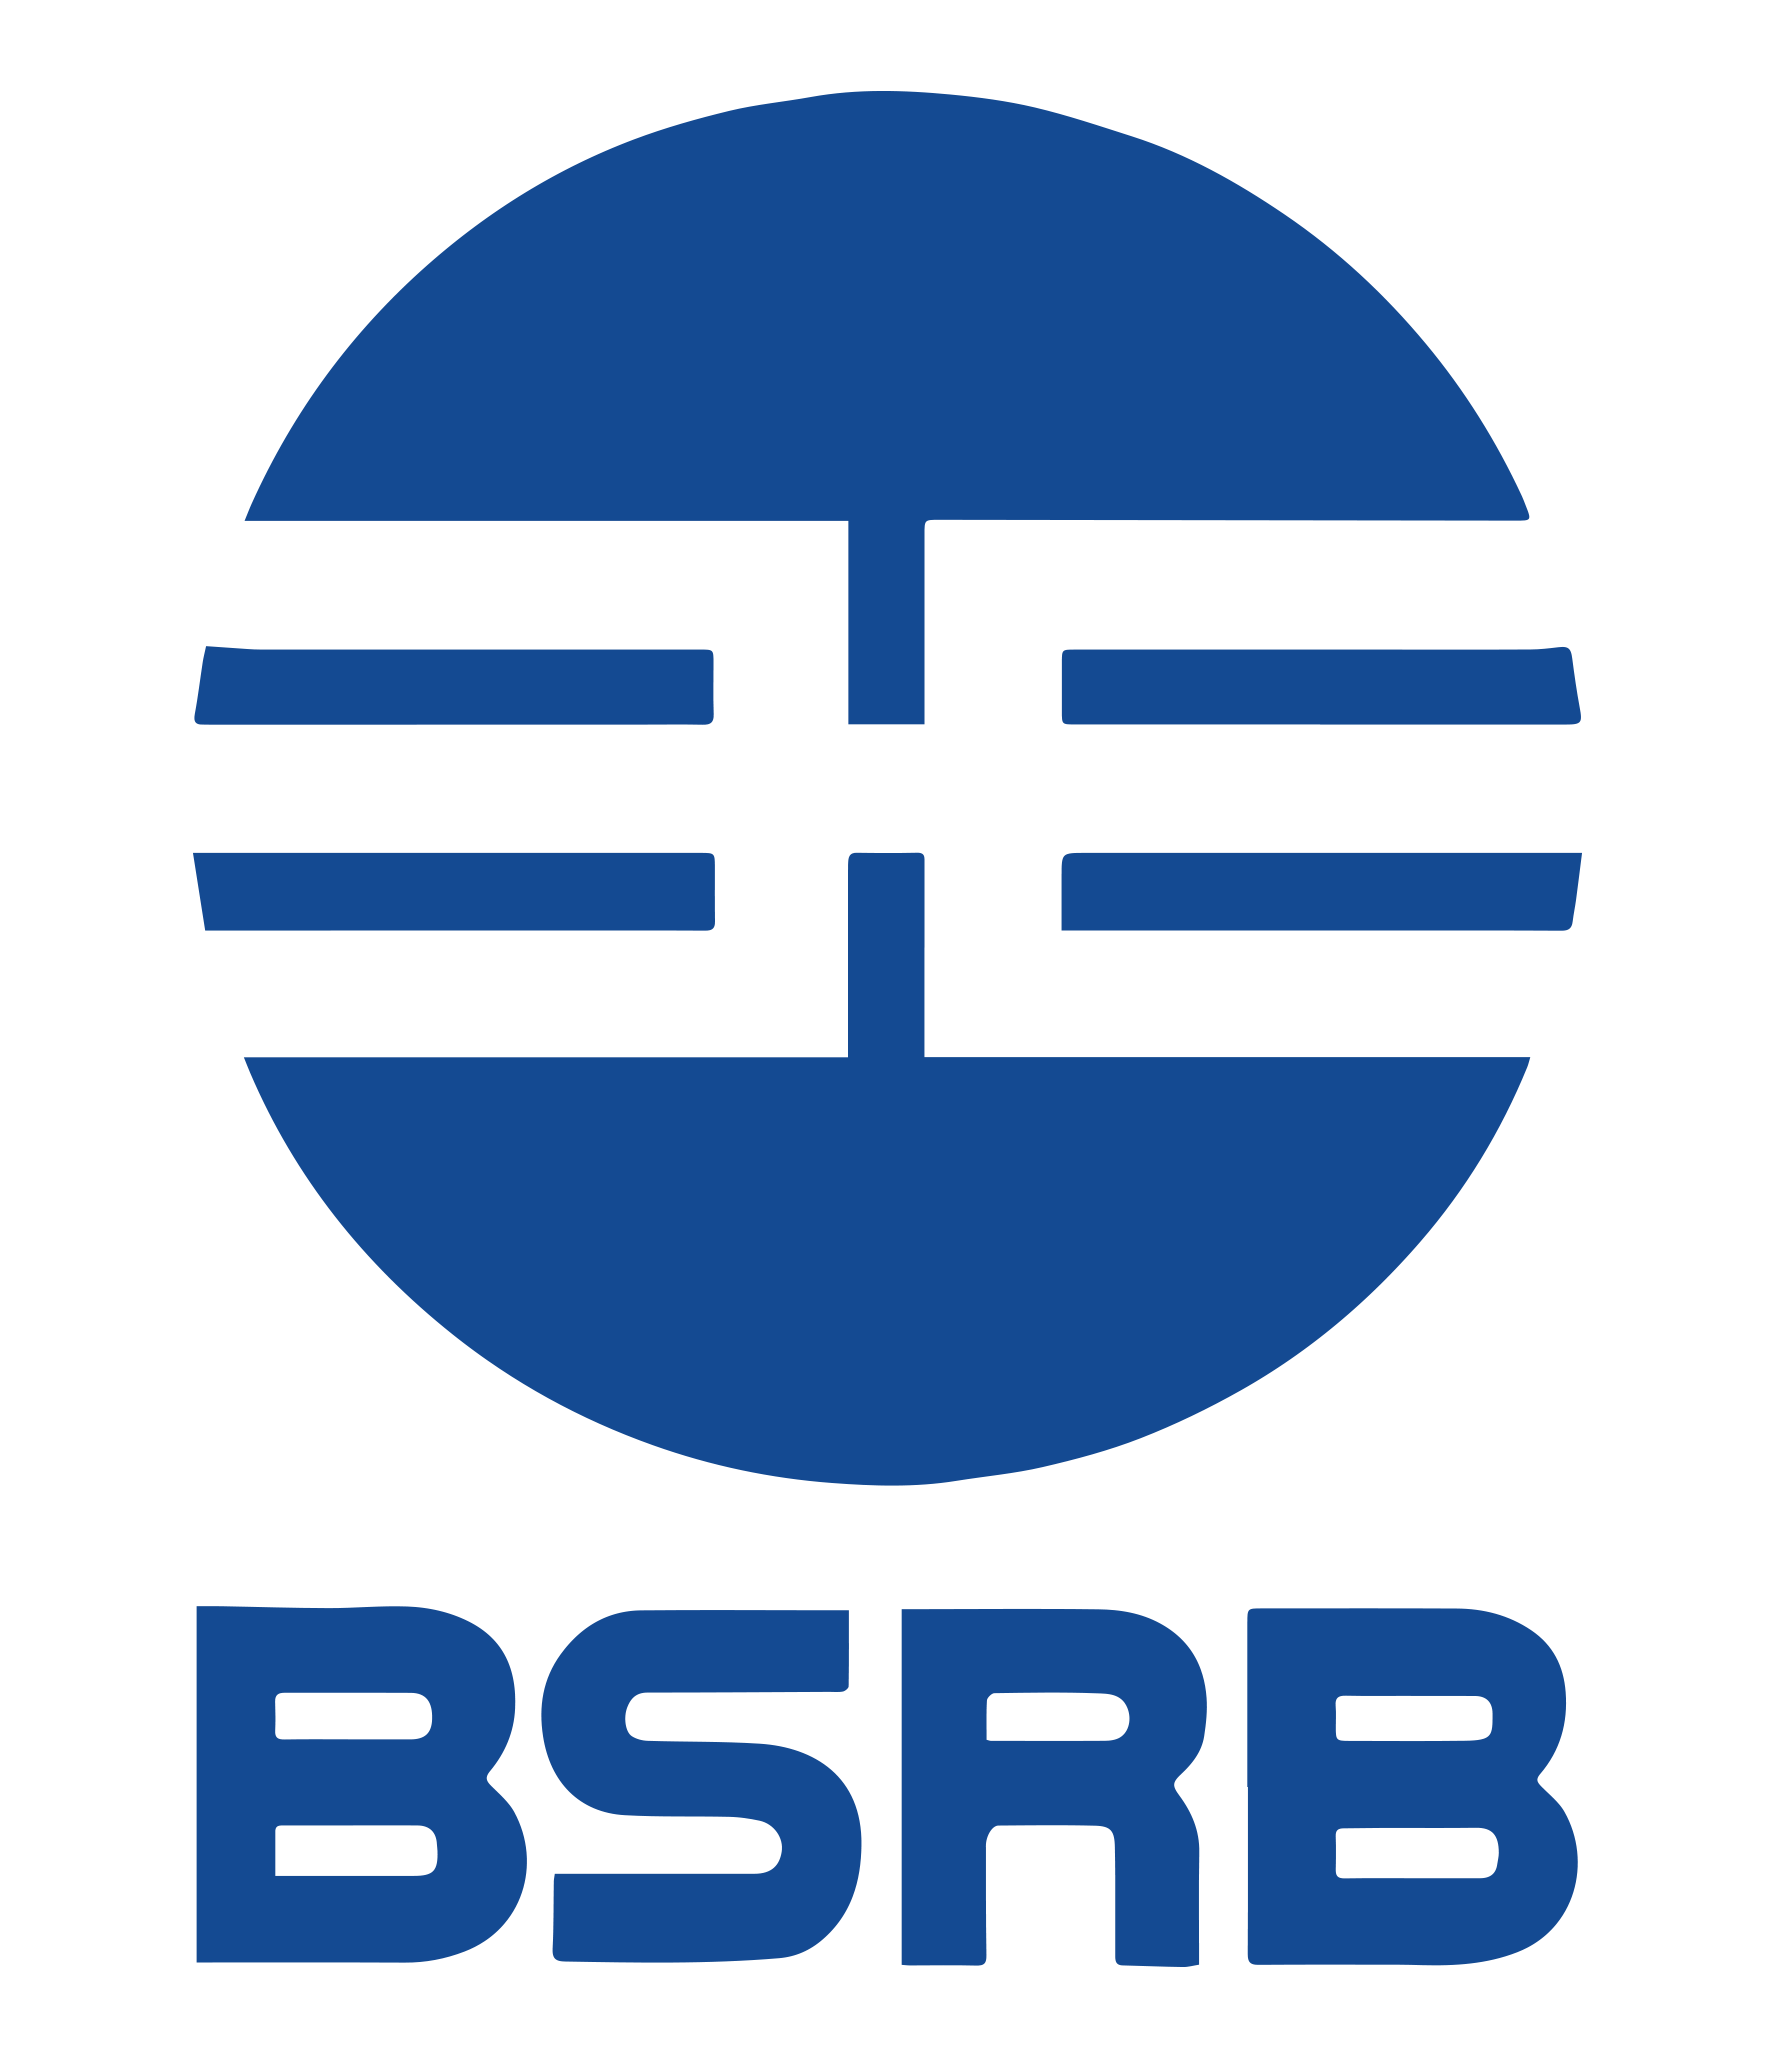 bsrb-merki-2017.png